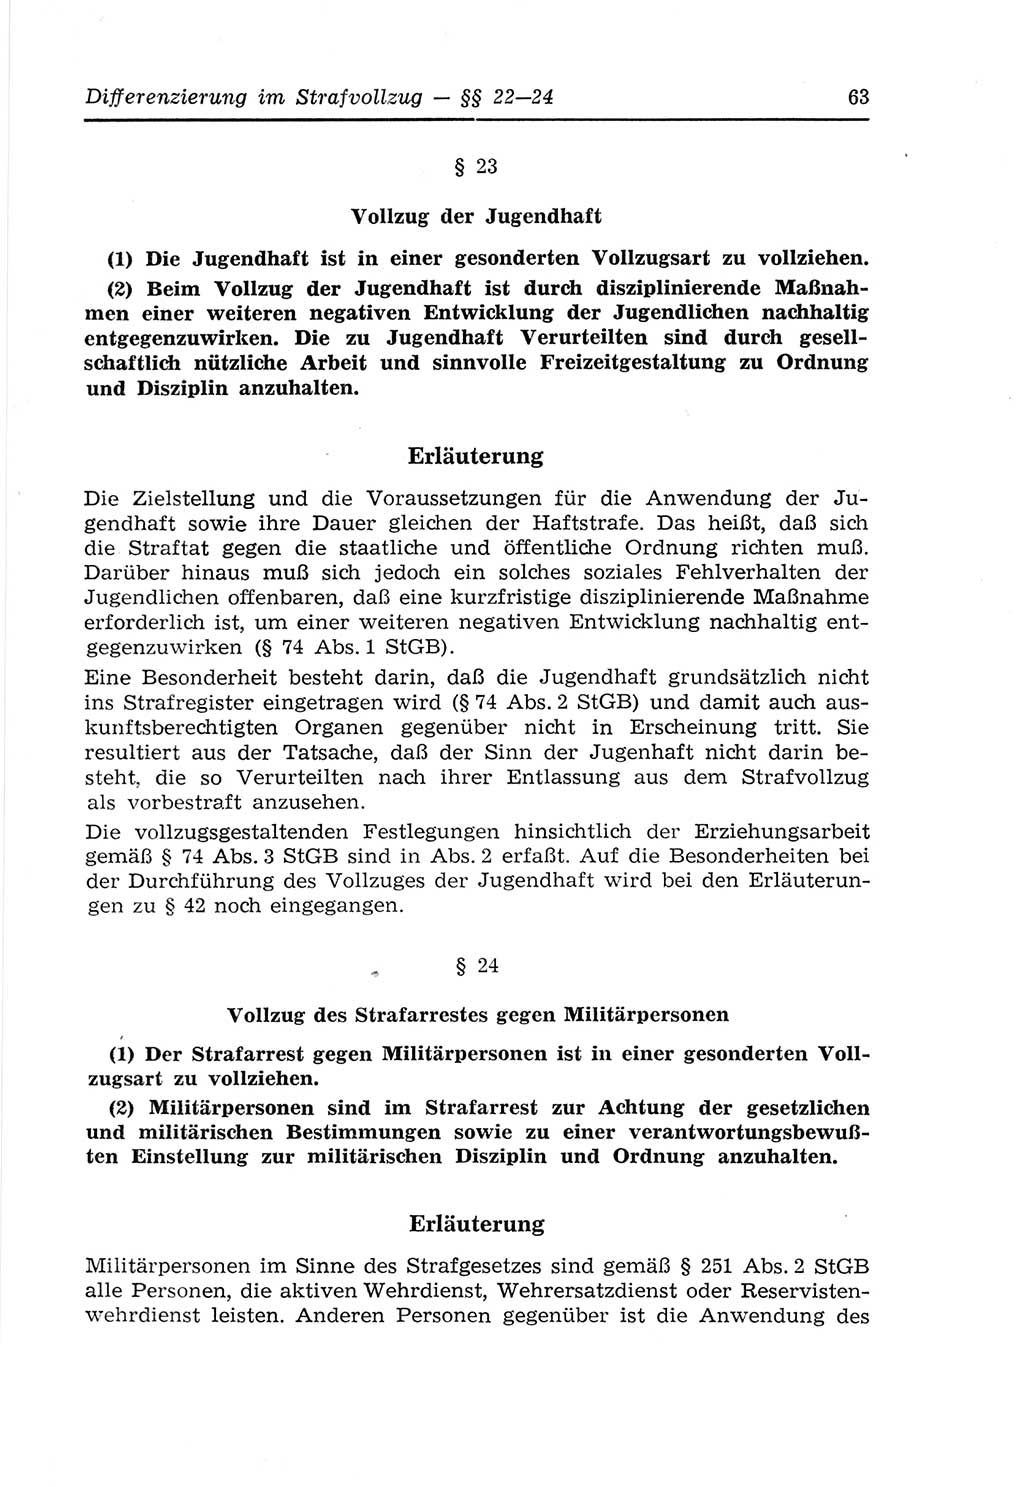 Strafvollzugs- und Wiedereingliederungsgesetz (SVWG) der Deutschen Demokratischen Republik (DDR) 1968, Seite 63 (SVWG DDR 1968, S. 63)